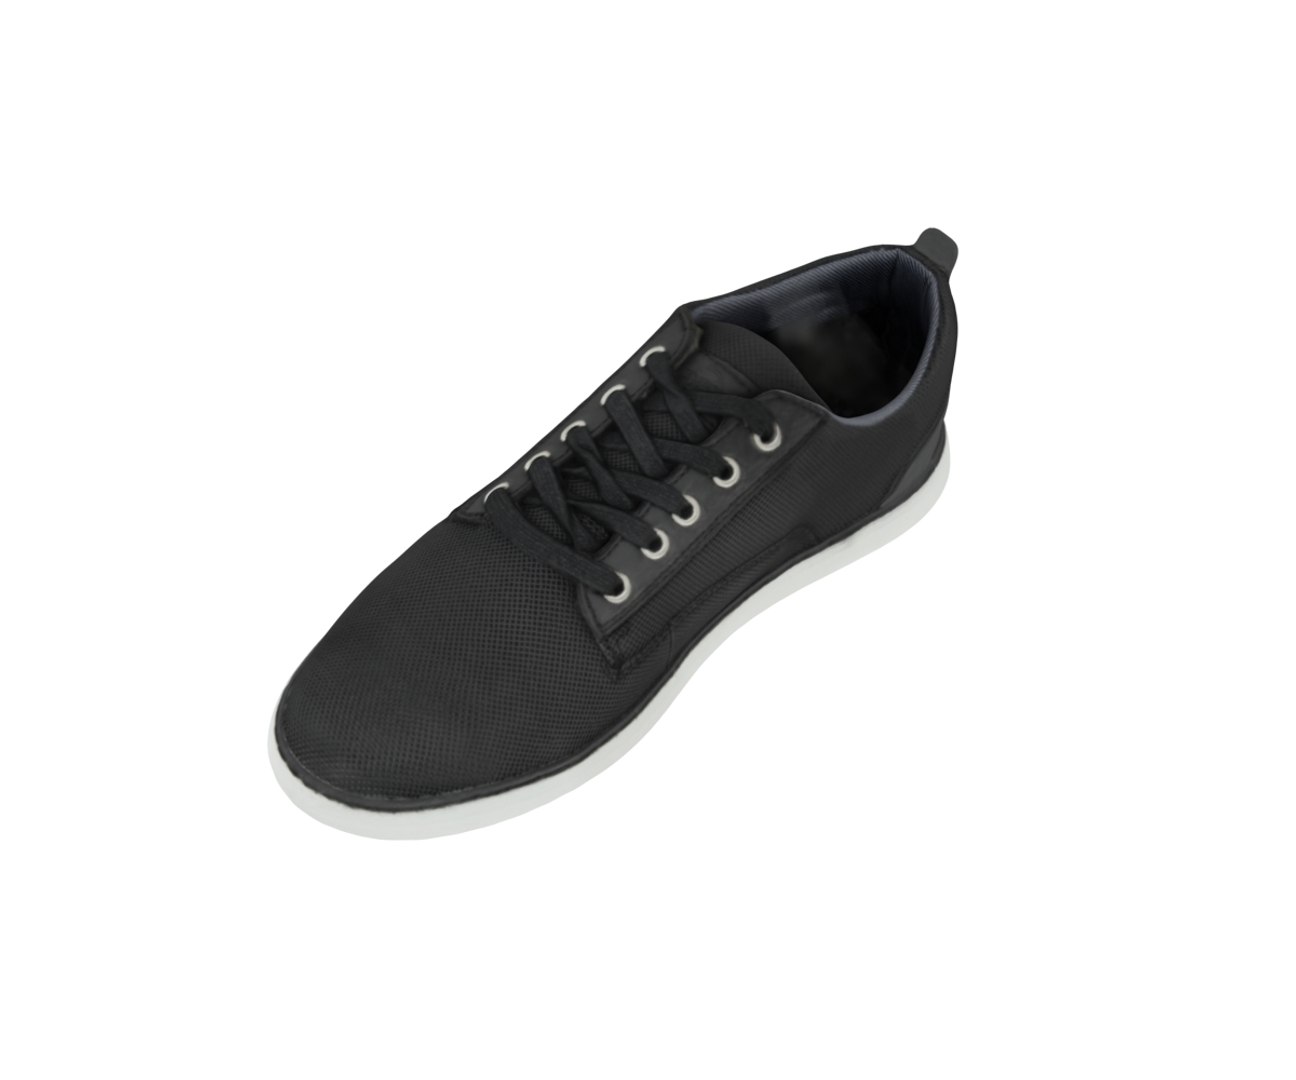 3D memphis sneakers model - TurboSquid 1572019